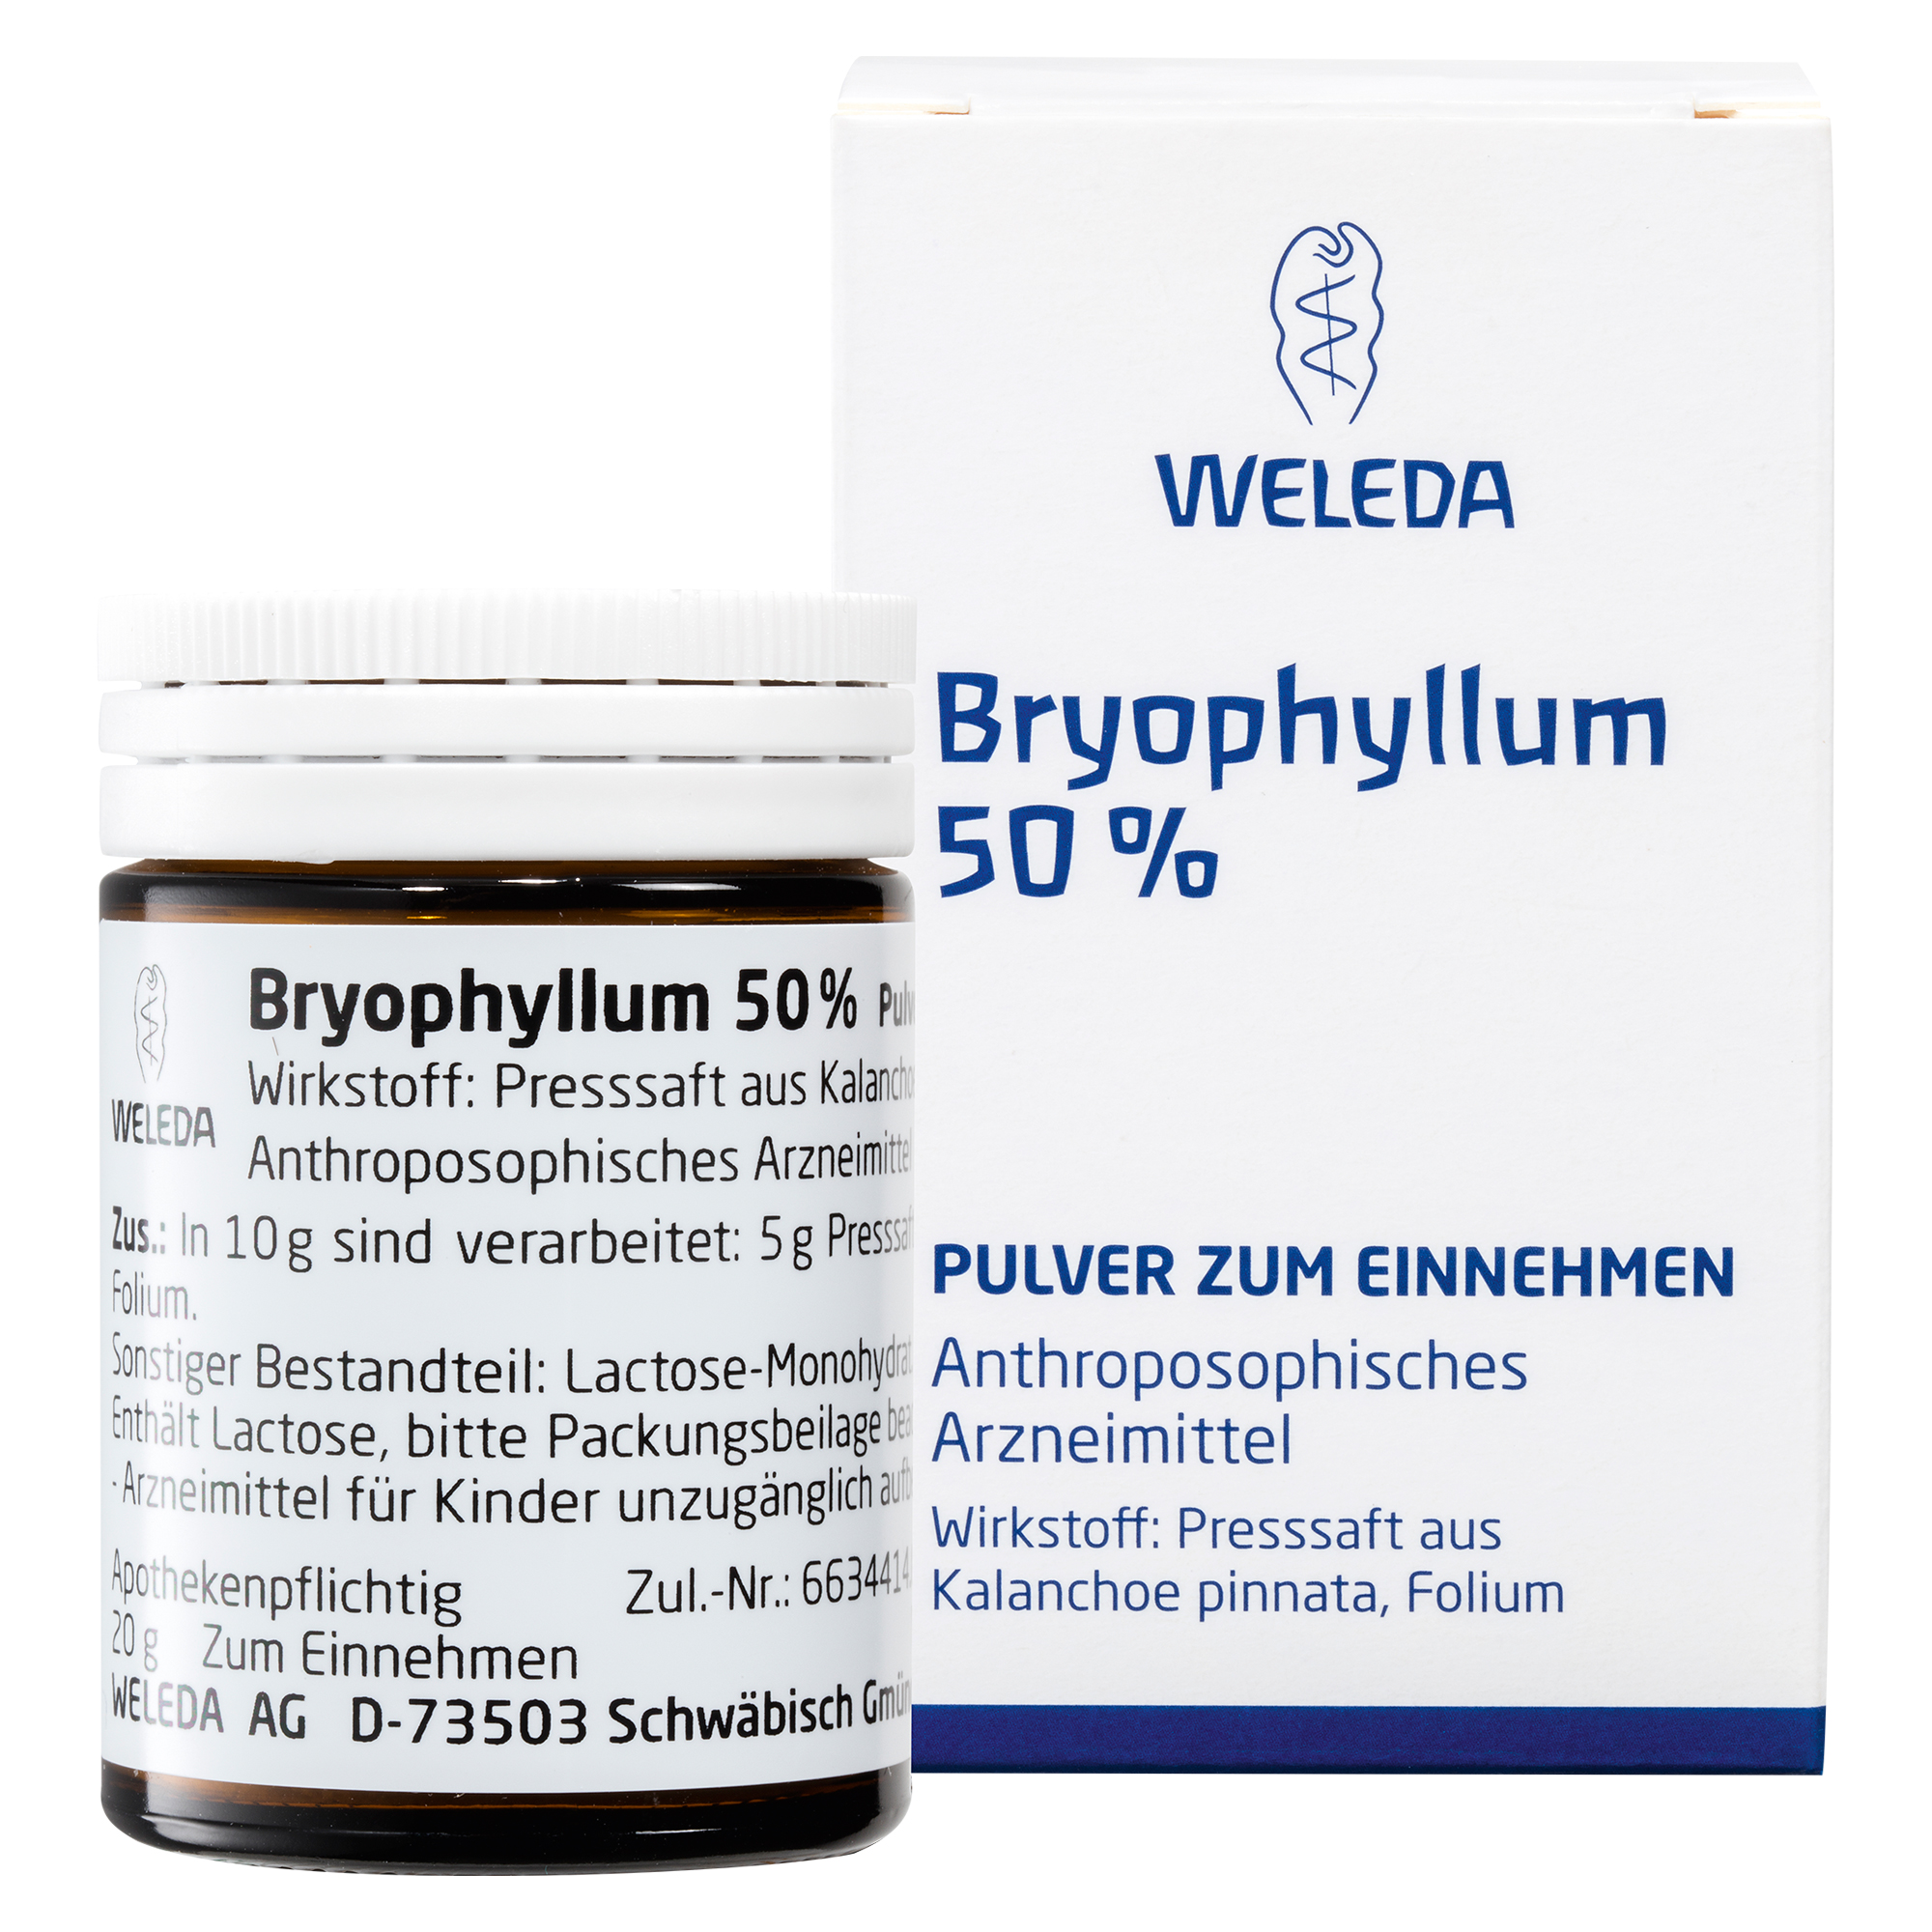 Bryophyllum 50% Pulver zum Einnehmen.